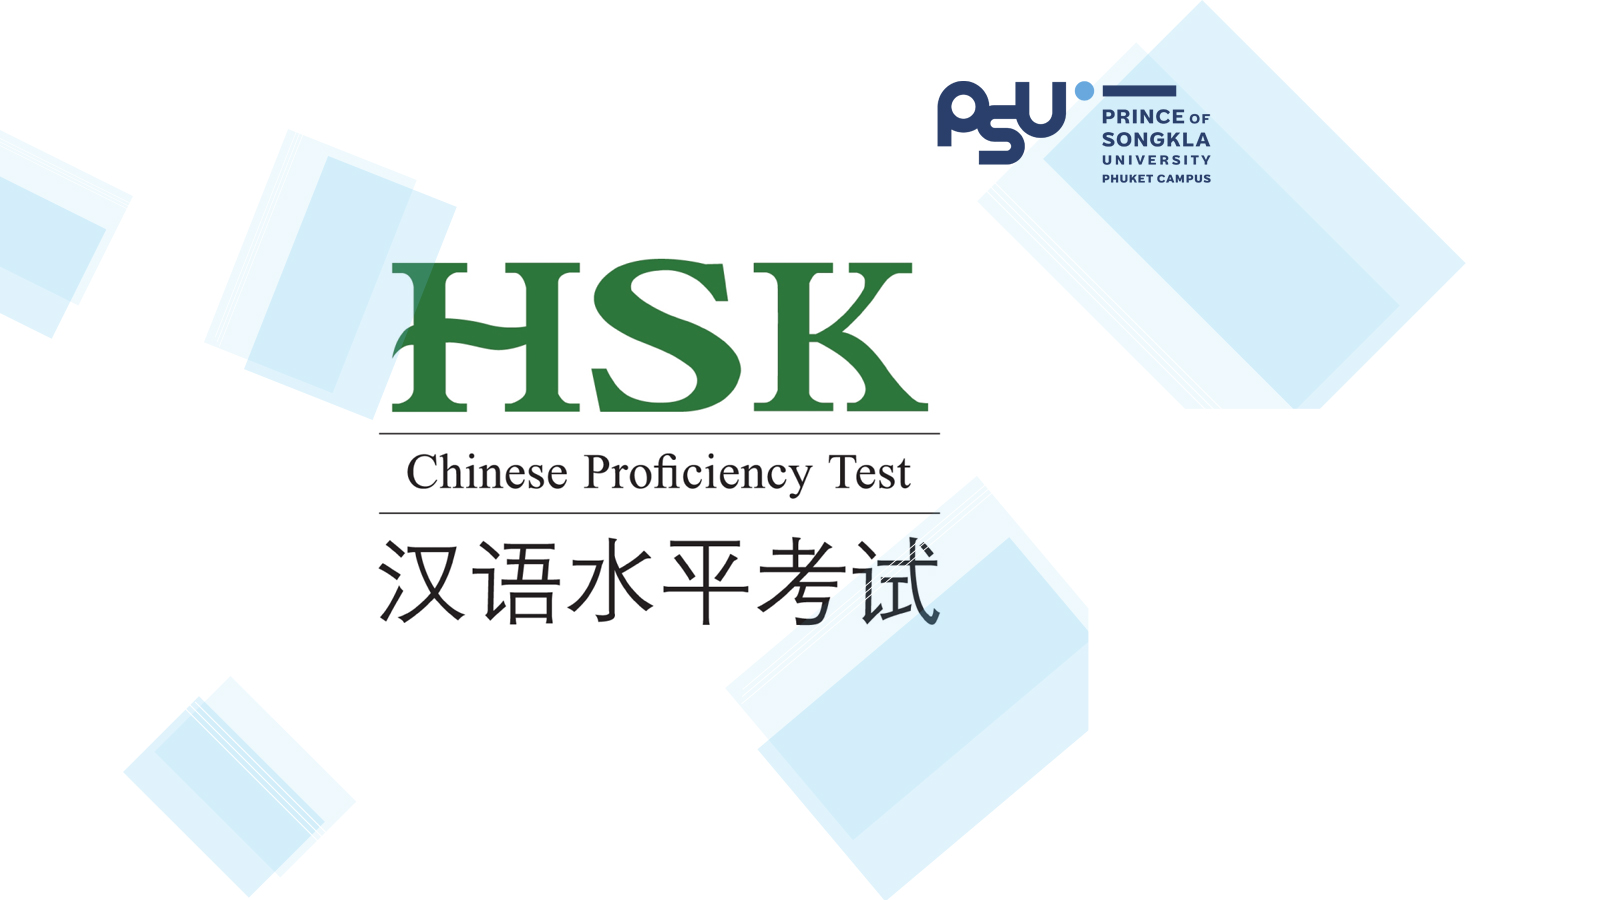 ประกาศรายชื่อผู้มีสิทธิ์สอบวัดระดับความรู้ภาษาจีน (HSK) ครั้งที่ 6 ประจำปี 2563 ในวันเสาร์ที่ 21 พฤษจิกายน 2563